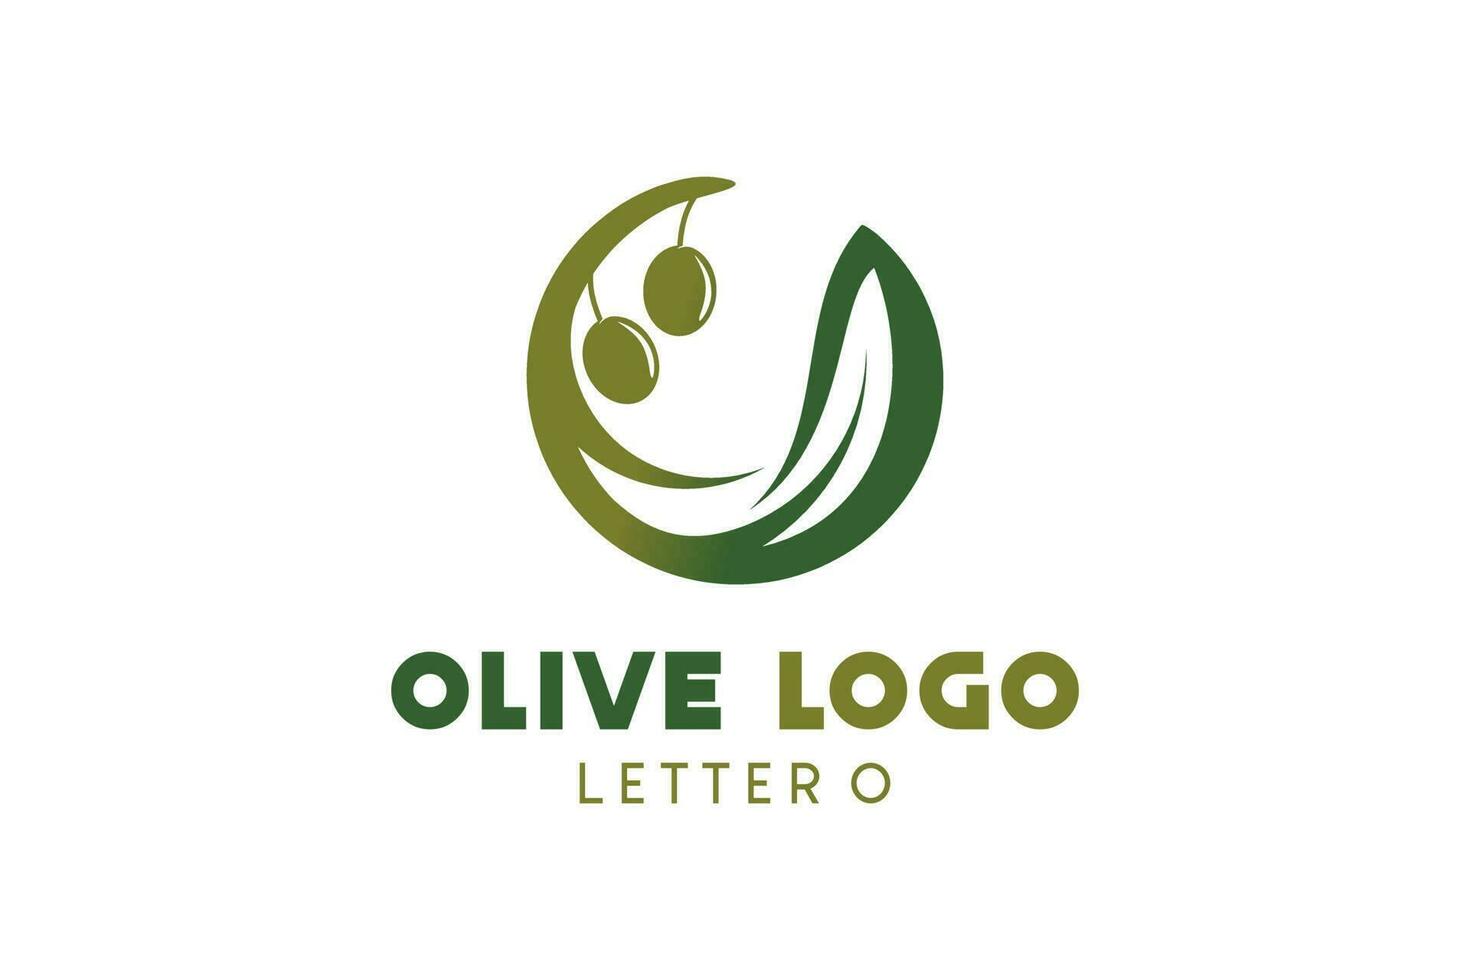 Oliva logotipo Projeto com carta o conceito, natural verde Oliva vetor ilustração